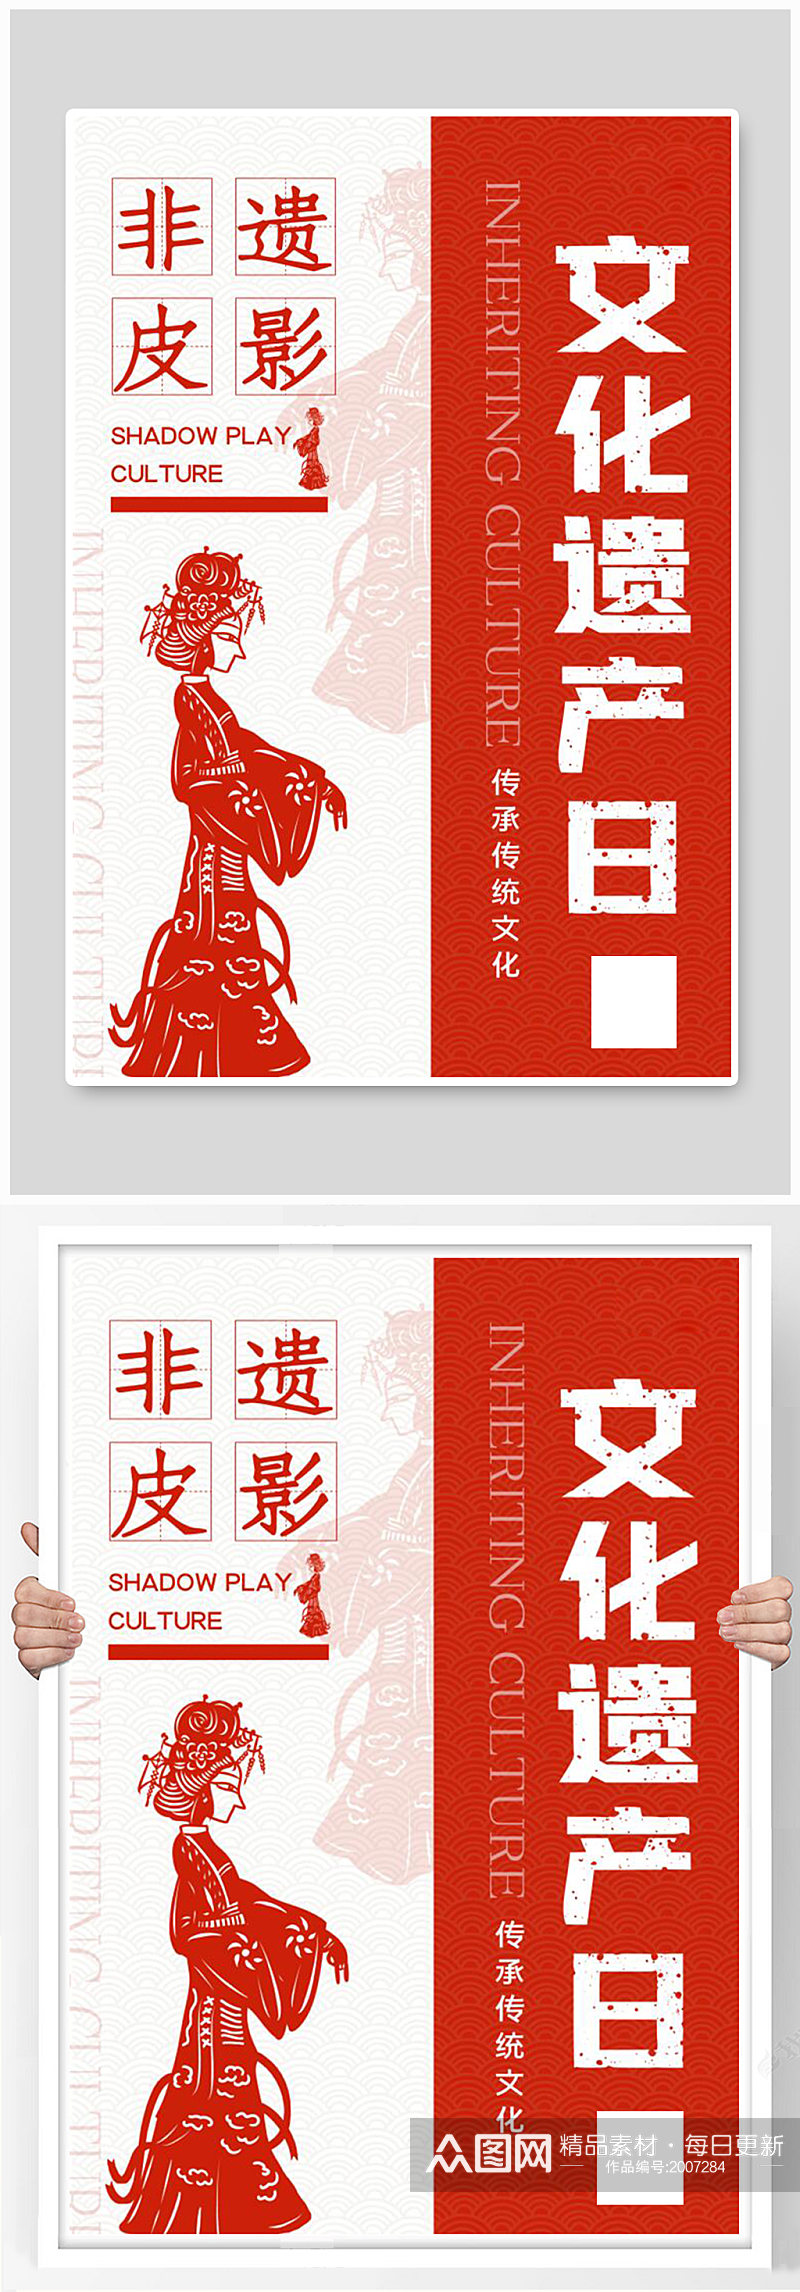 非遗皮影文化遗产日中国风宣传海报素材